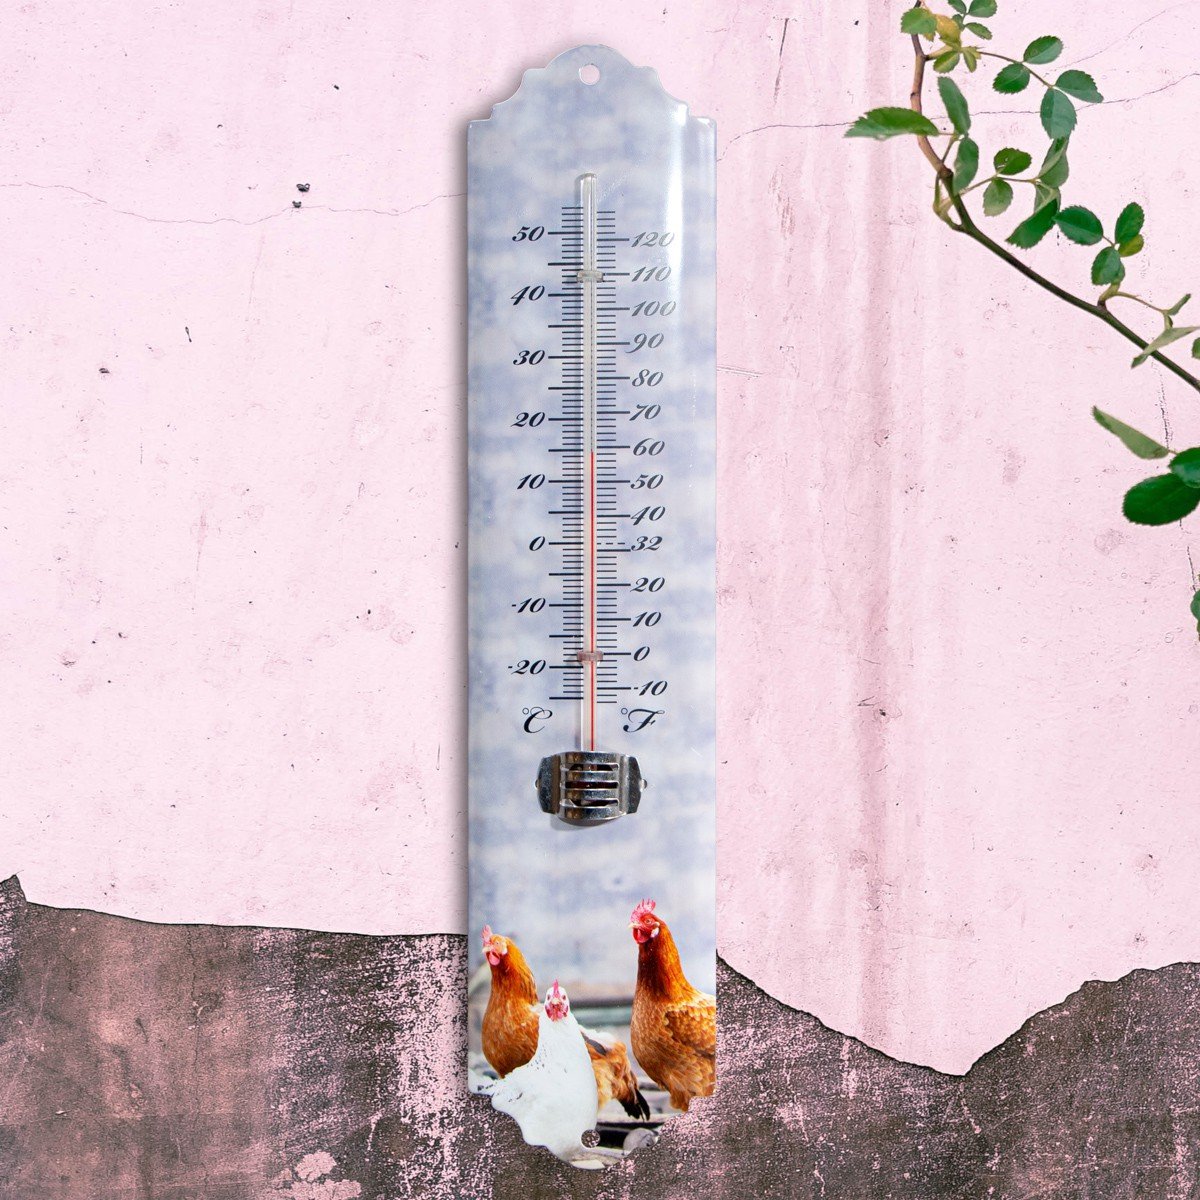 Nostalgie Landhausstil Thermometer Gusseisen Garten Antikstil Außenthermometer 